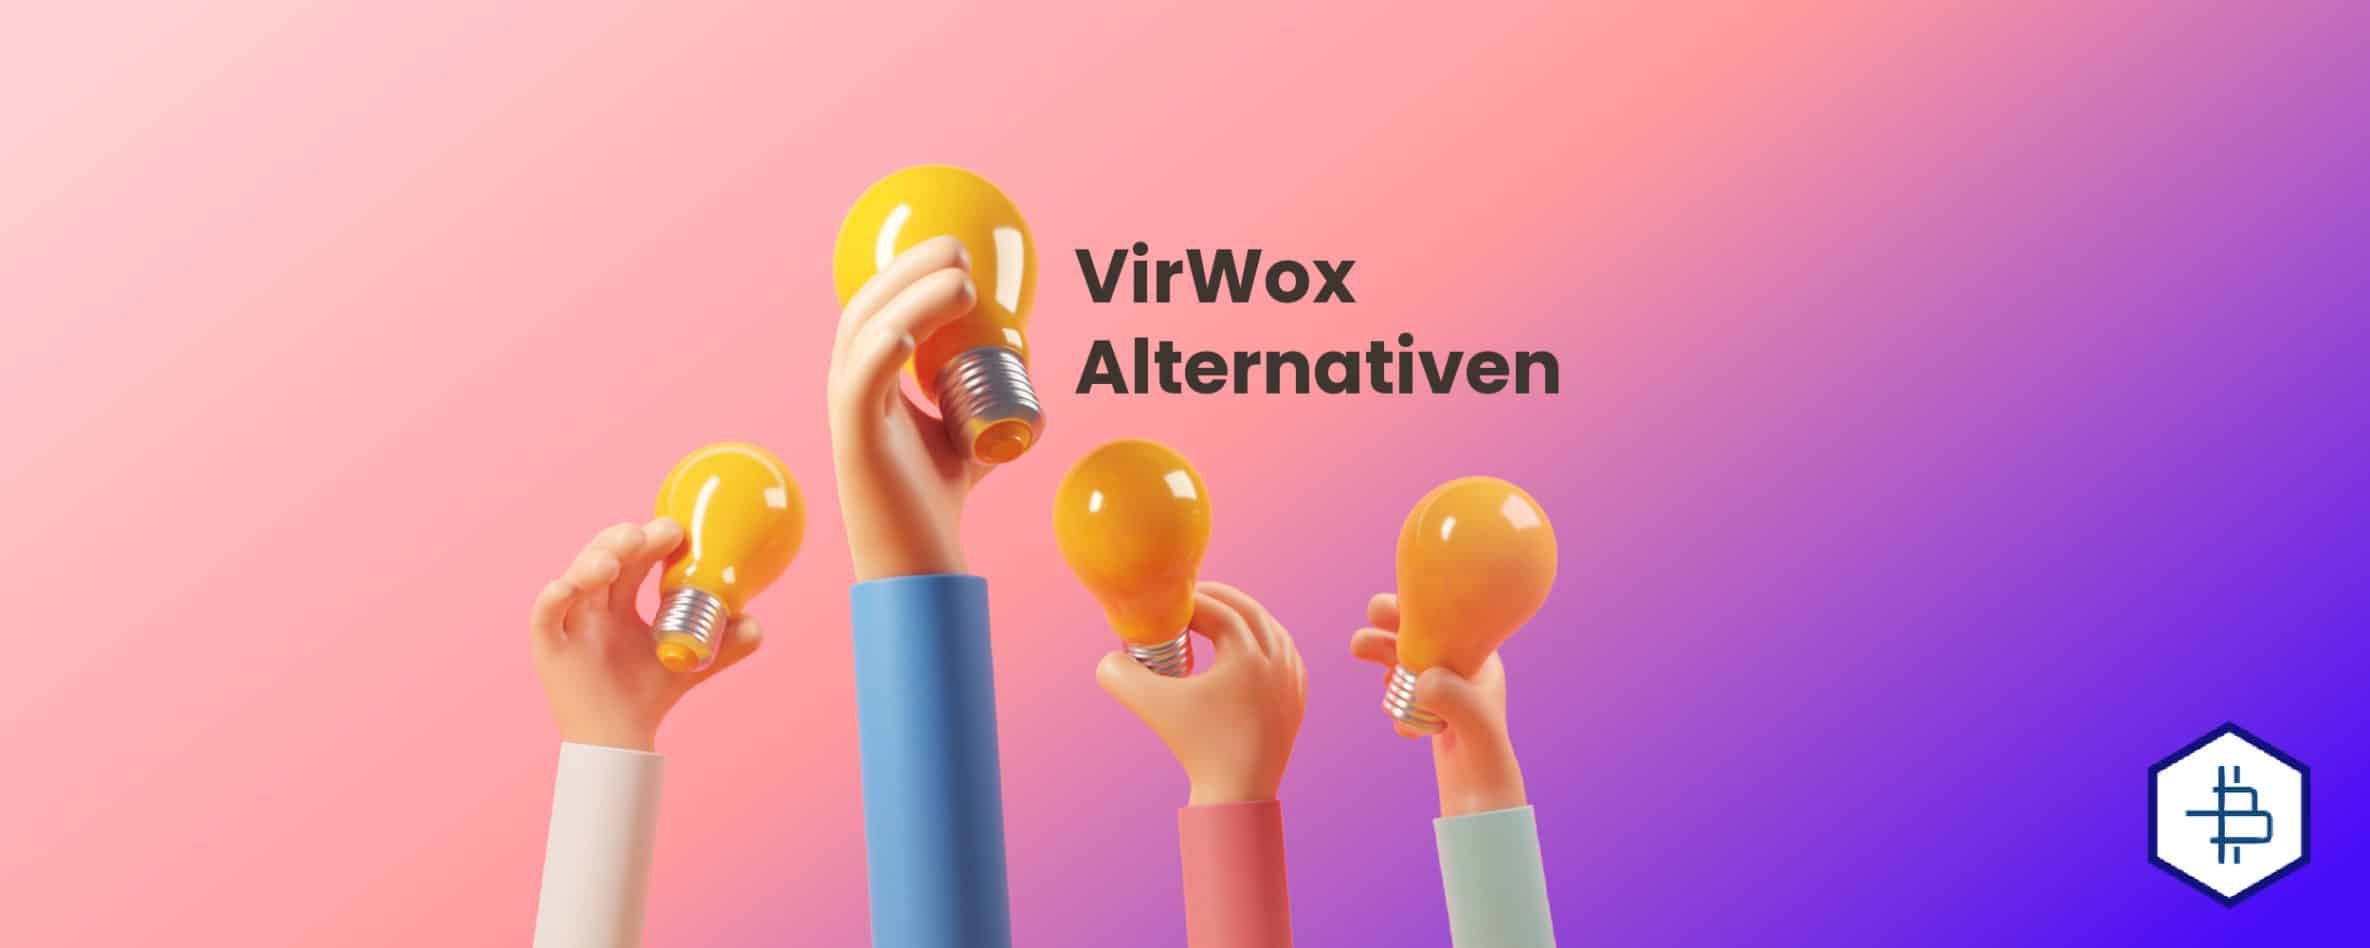 VirWox Alternativen